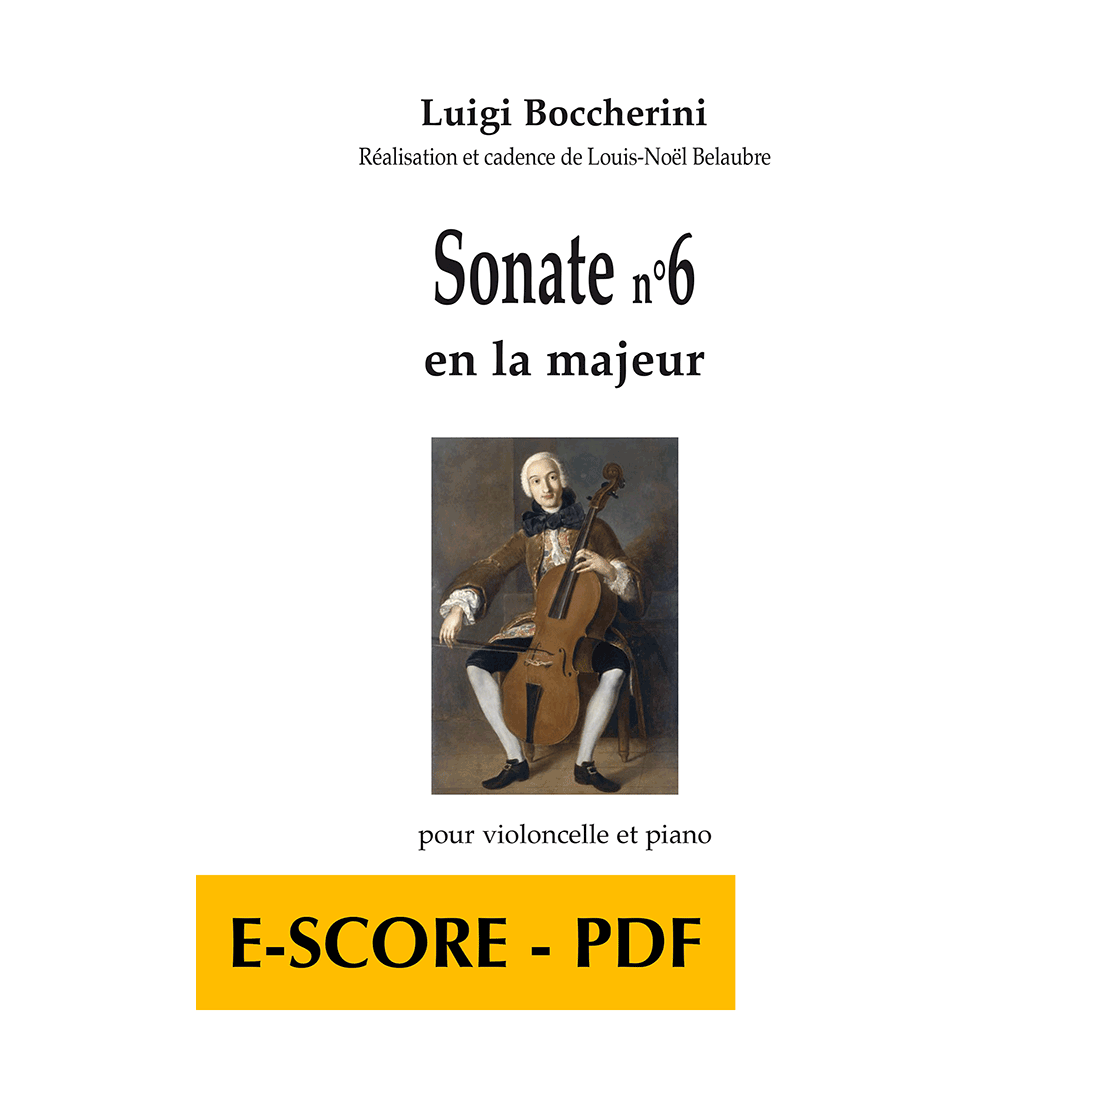 Sonate n°6 en la majeur pour violoncelle et piano - E-score PDF